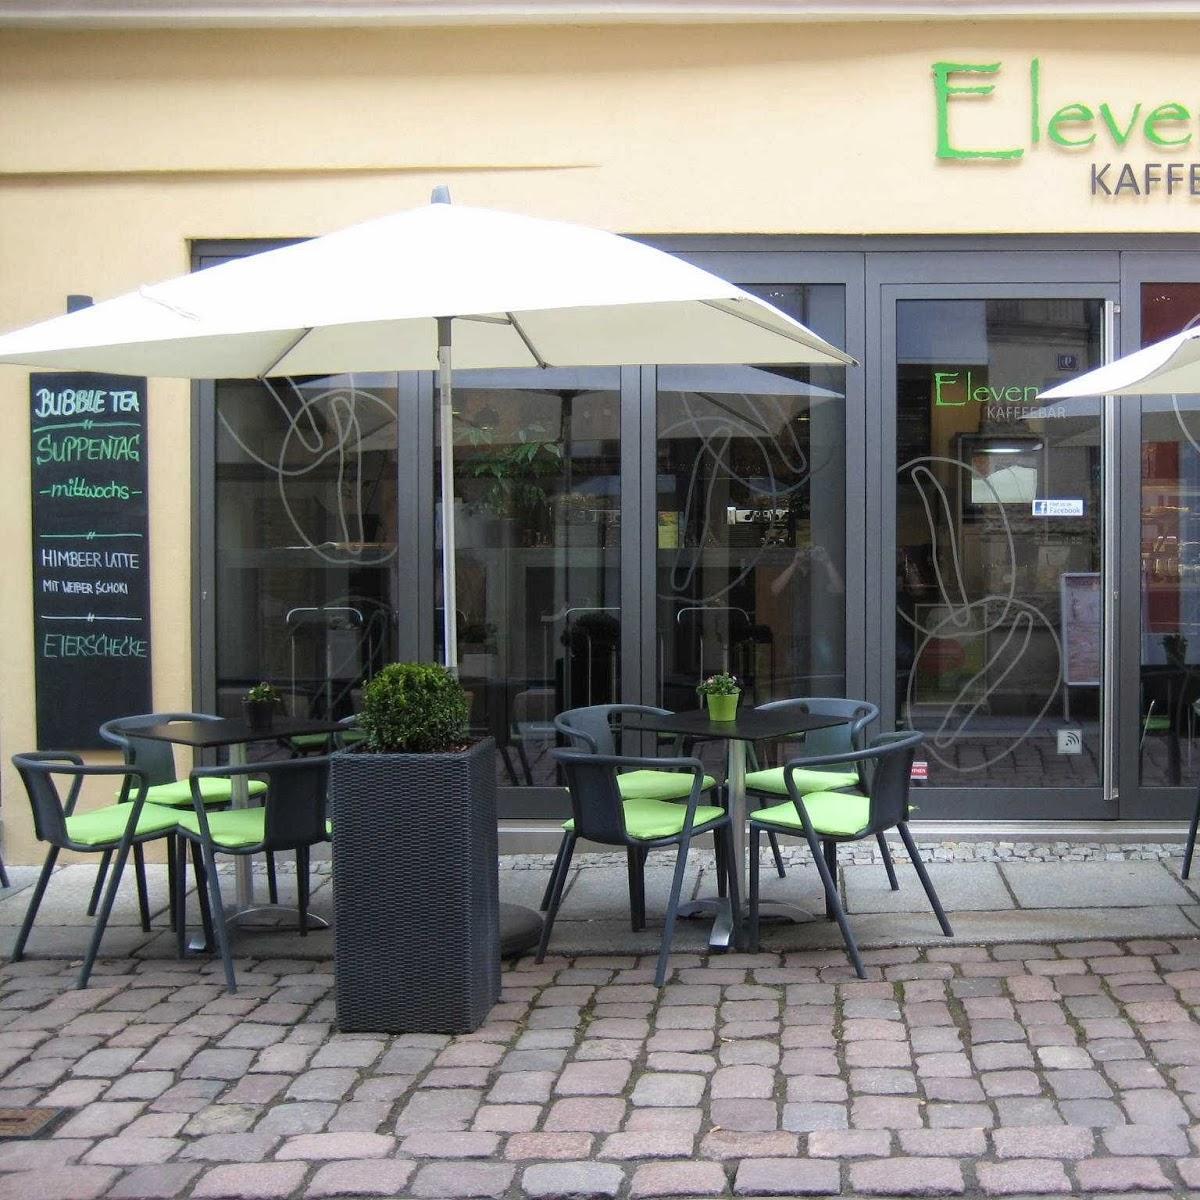 Restaurant "Eleven KAFFEEBAR" in Pirna